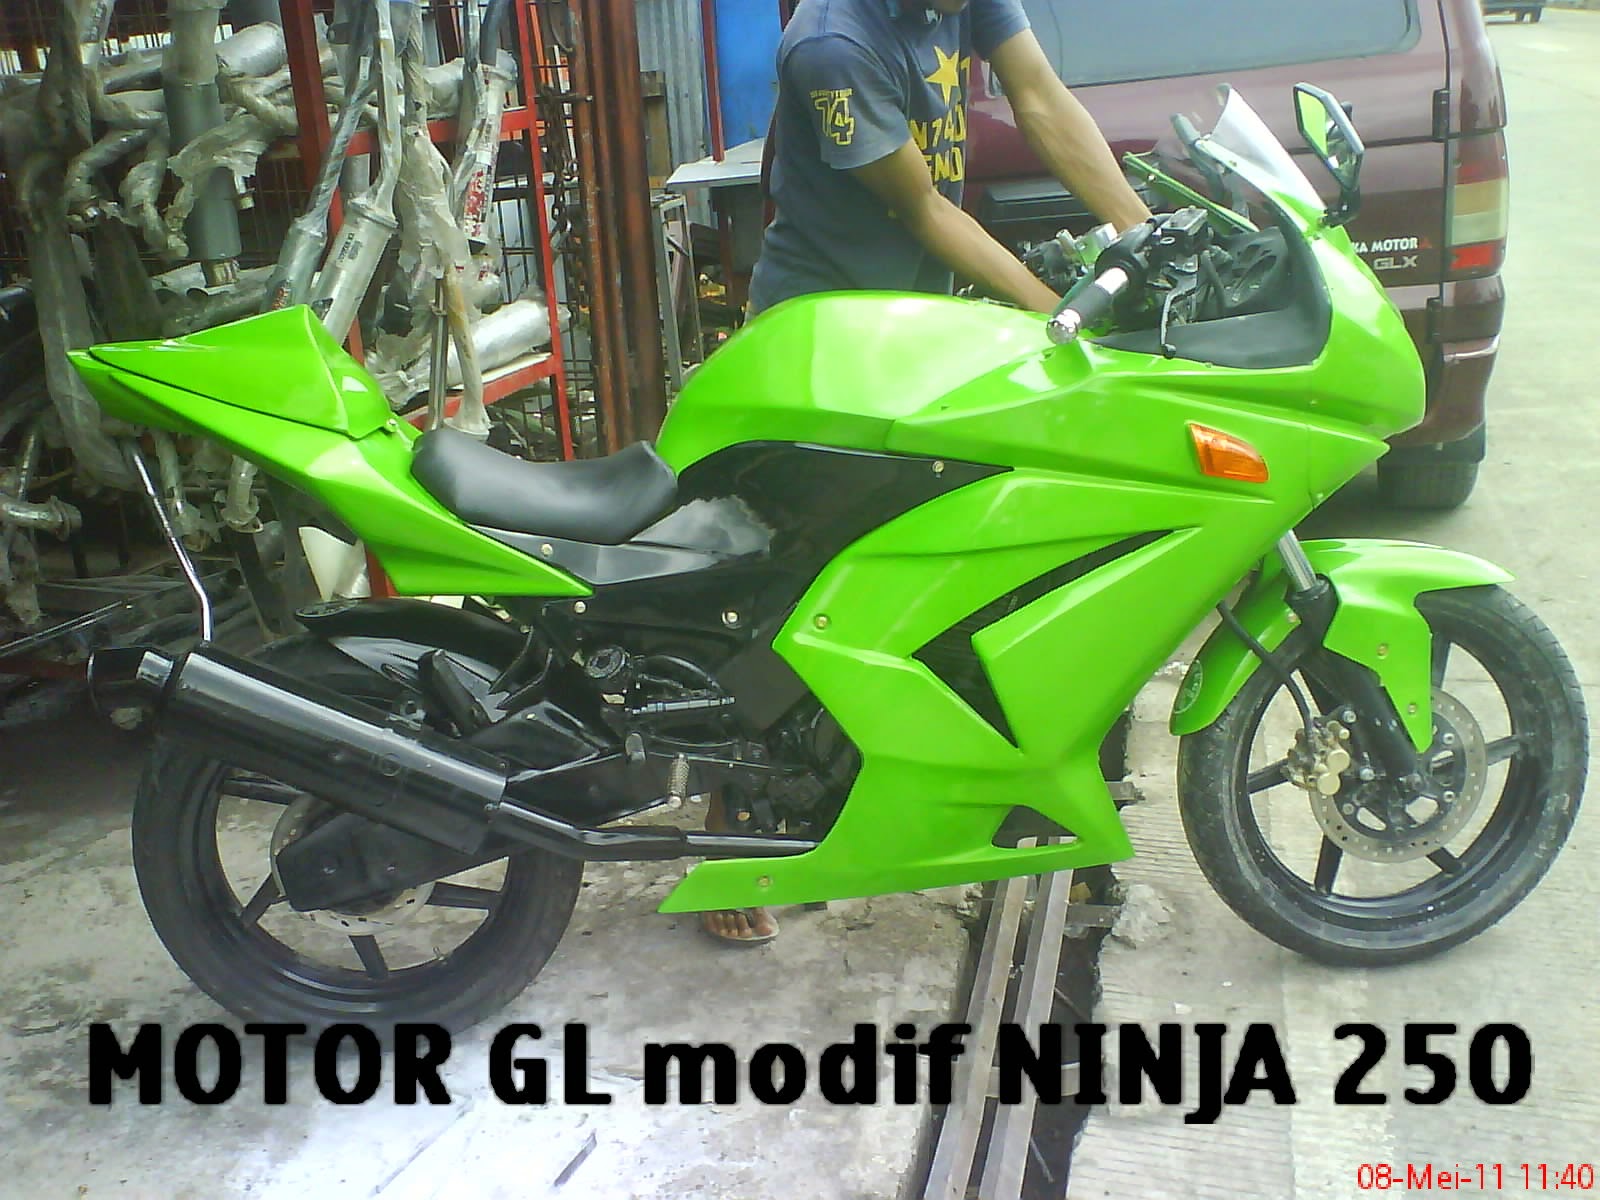 Thunder 125 Modif Ninja 250